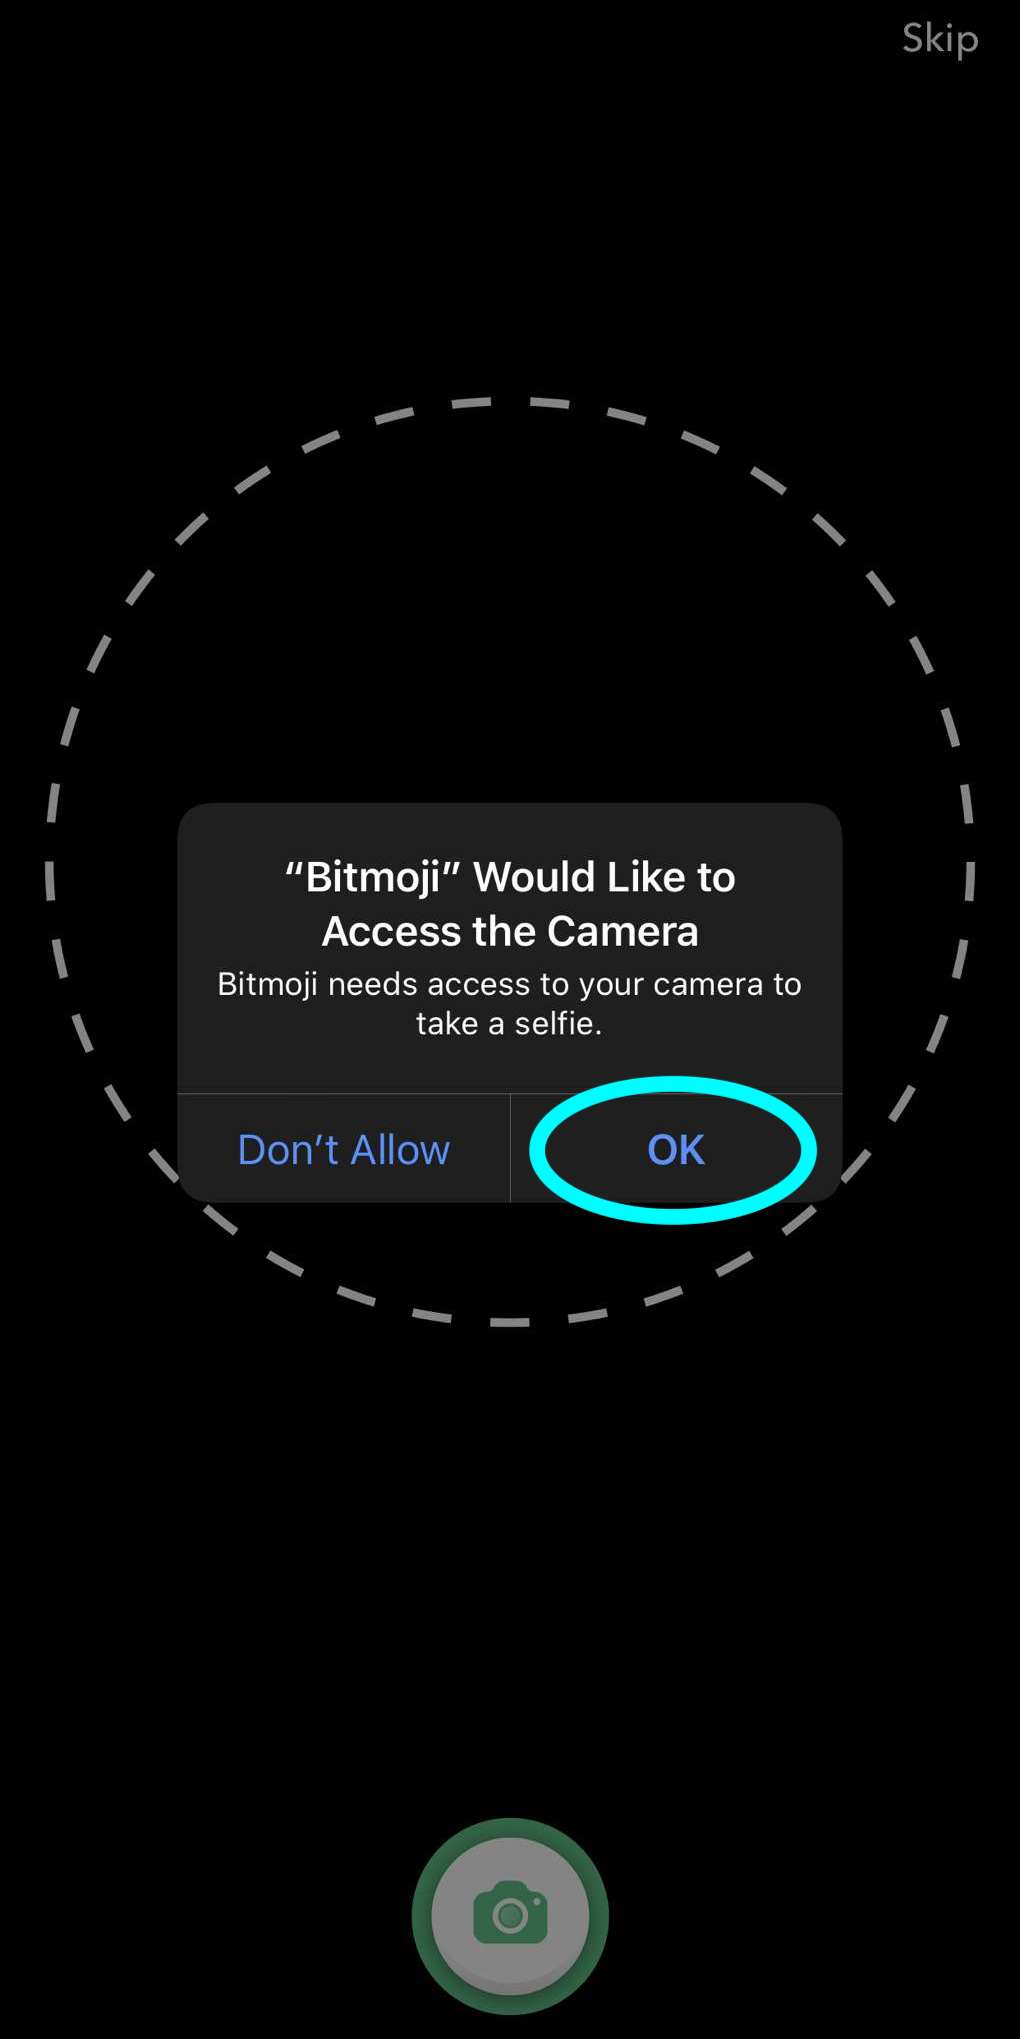 نافذة منبثقة للسماح لـ Bitmoji بالوصول إلى الكاميرا، يتم تمييز الزر "موافق" للسماح بالوصول